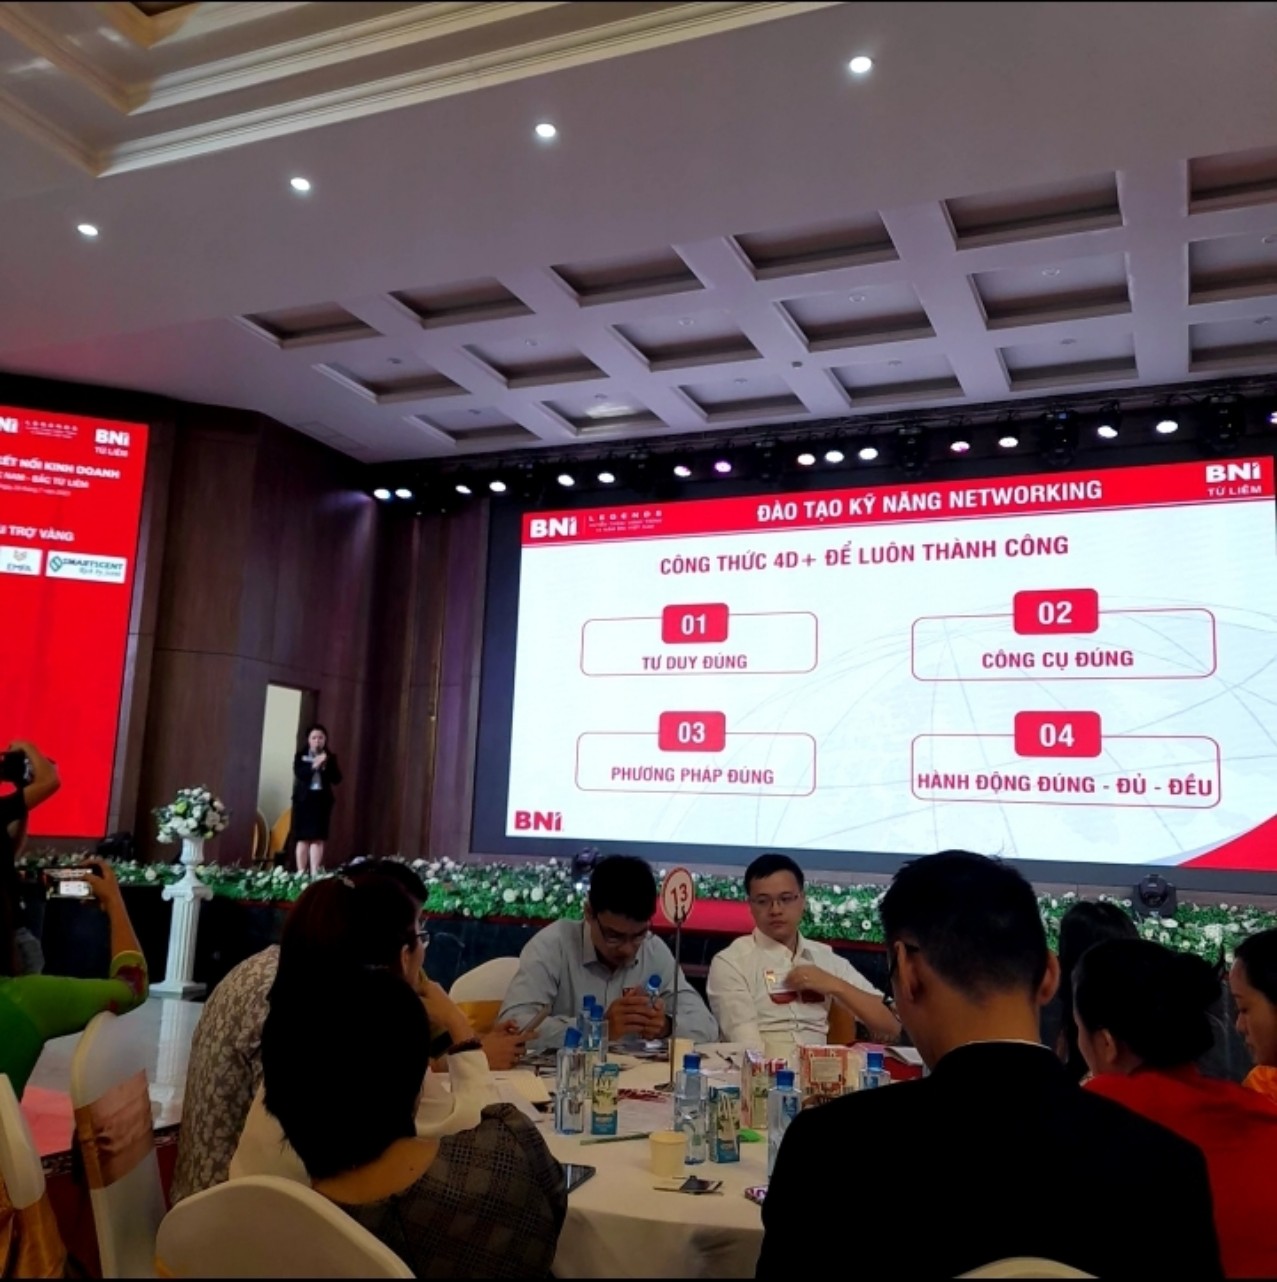 Michael Ho, Hon. Doctor, MBA, CFE on LinkedIn: Nhận diện thương hiệu BNI  chính thức ra mắt tại Vietnam. Logo BNI mới…